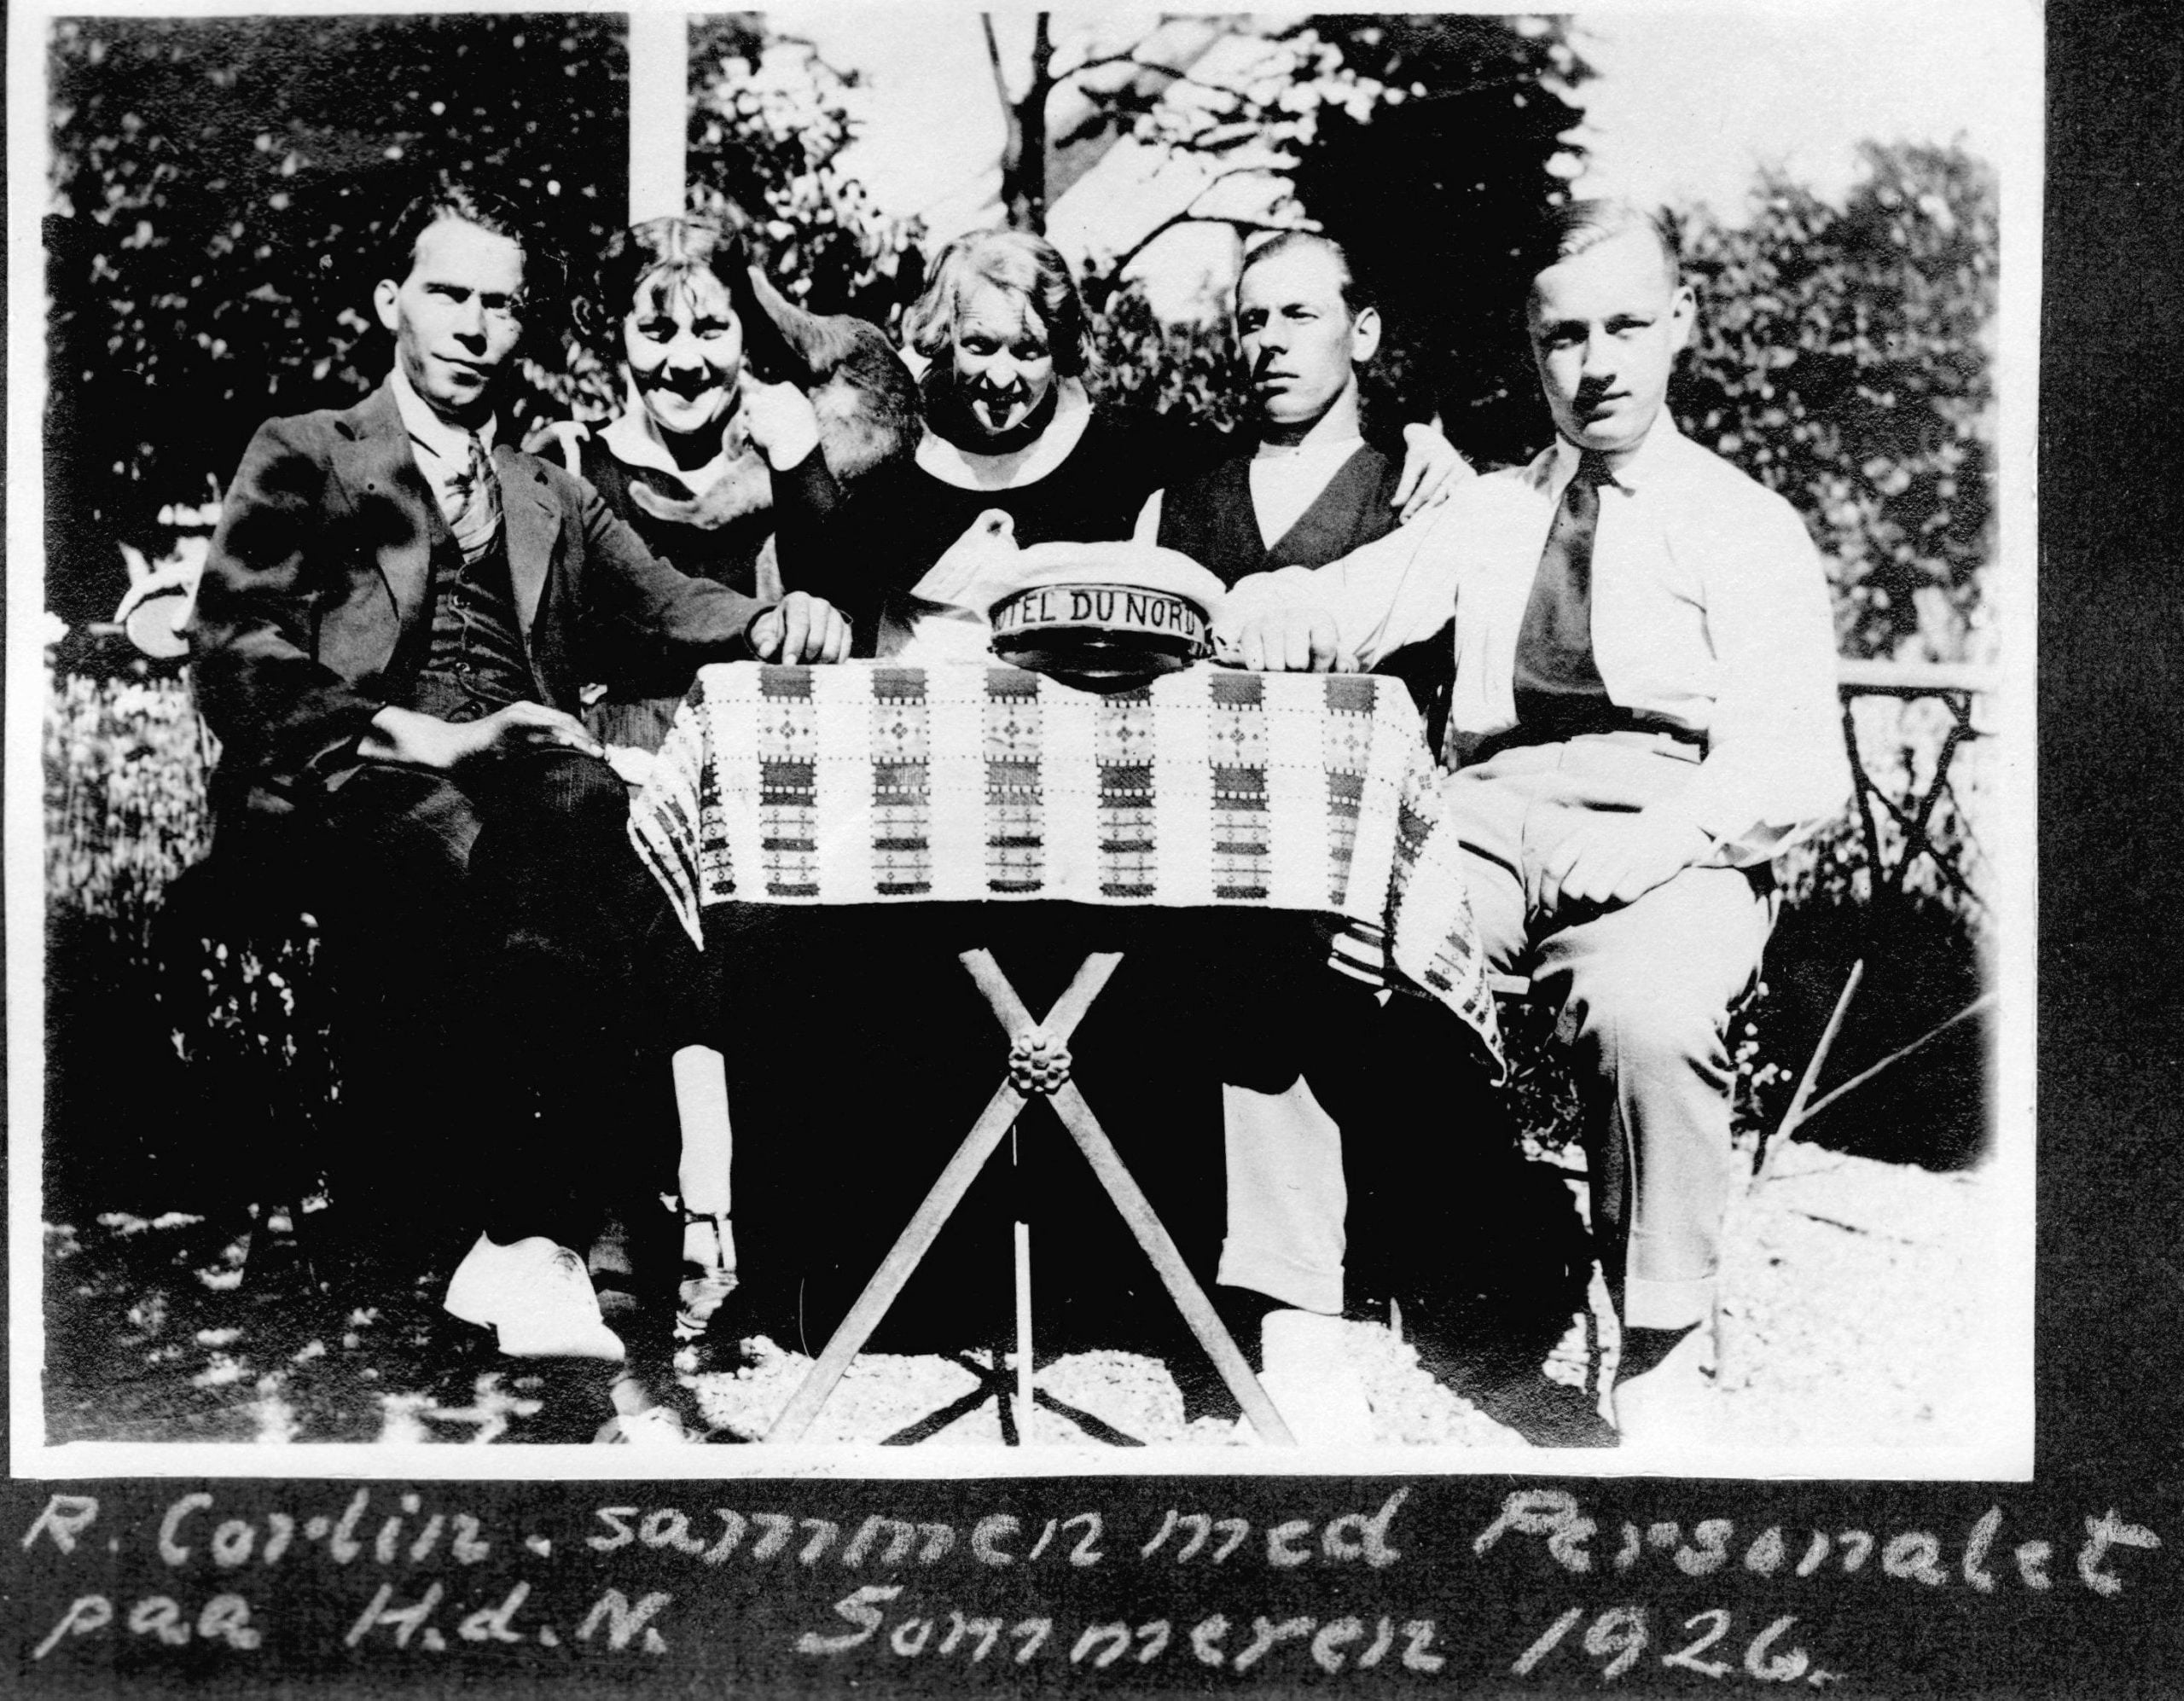 70.263 R. Corlin sammen med personalet på Hotel Du Nord sommeren 1926